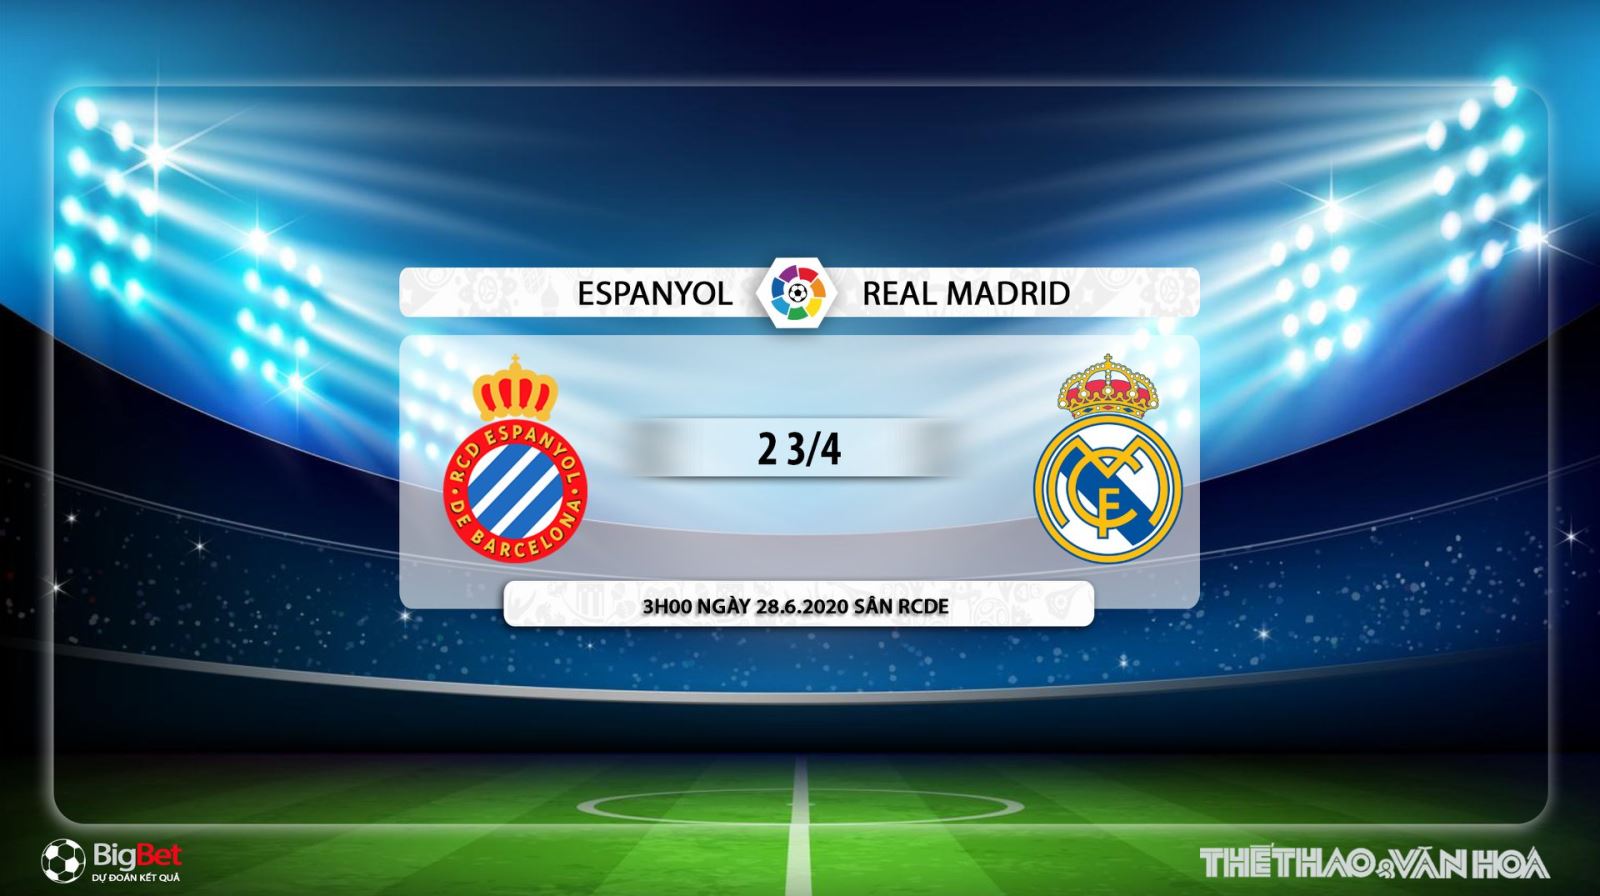 Espanyol vs Real Madrid, Real Madrid, Espanyol, trực tiếp bóng đá, nhận định bóng đá, kèo bóng đá, lịch thi đấu bóng đá, La Liga